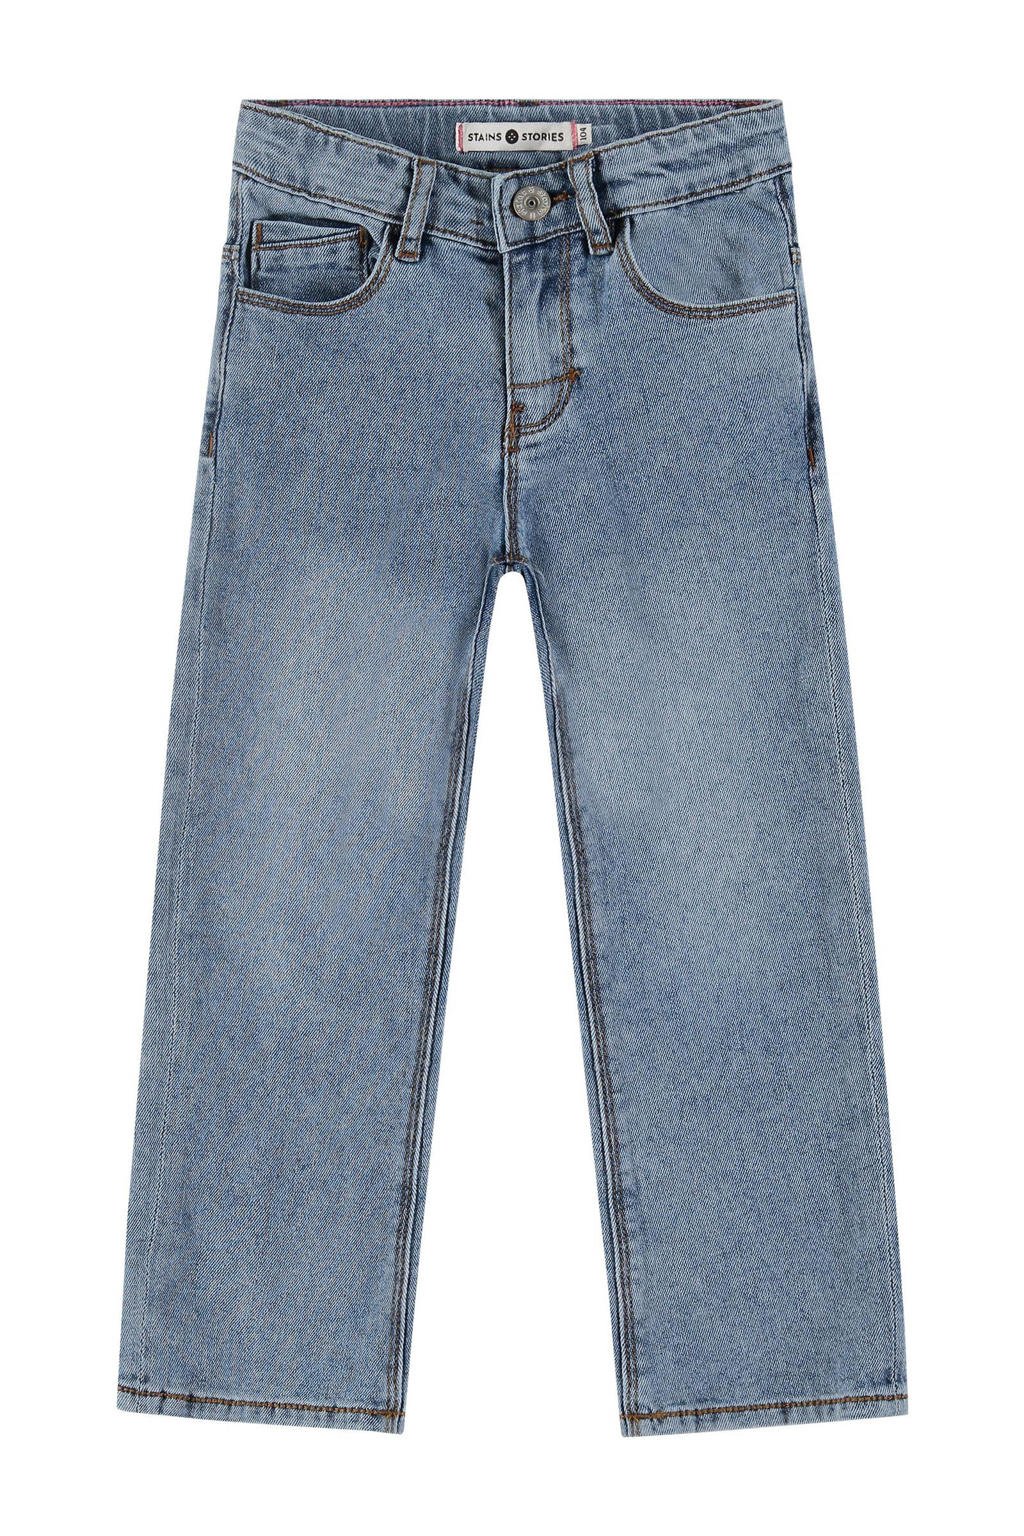 Blauwe meisjes Stains&Stories loose fit jeans van stretchdenim met regular waist en rits- en haaksluiting